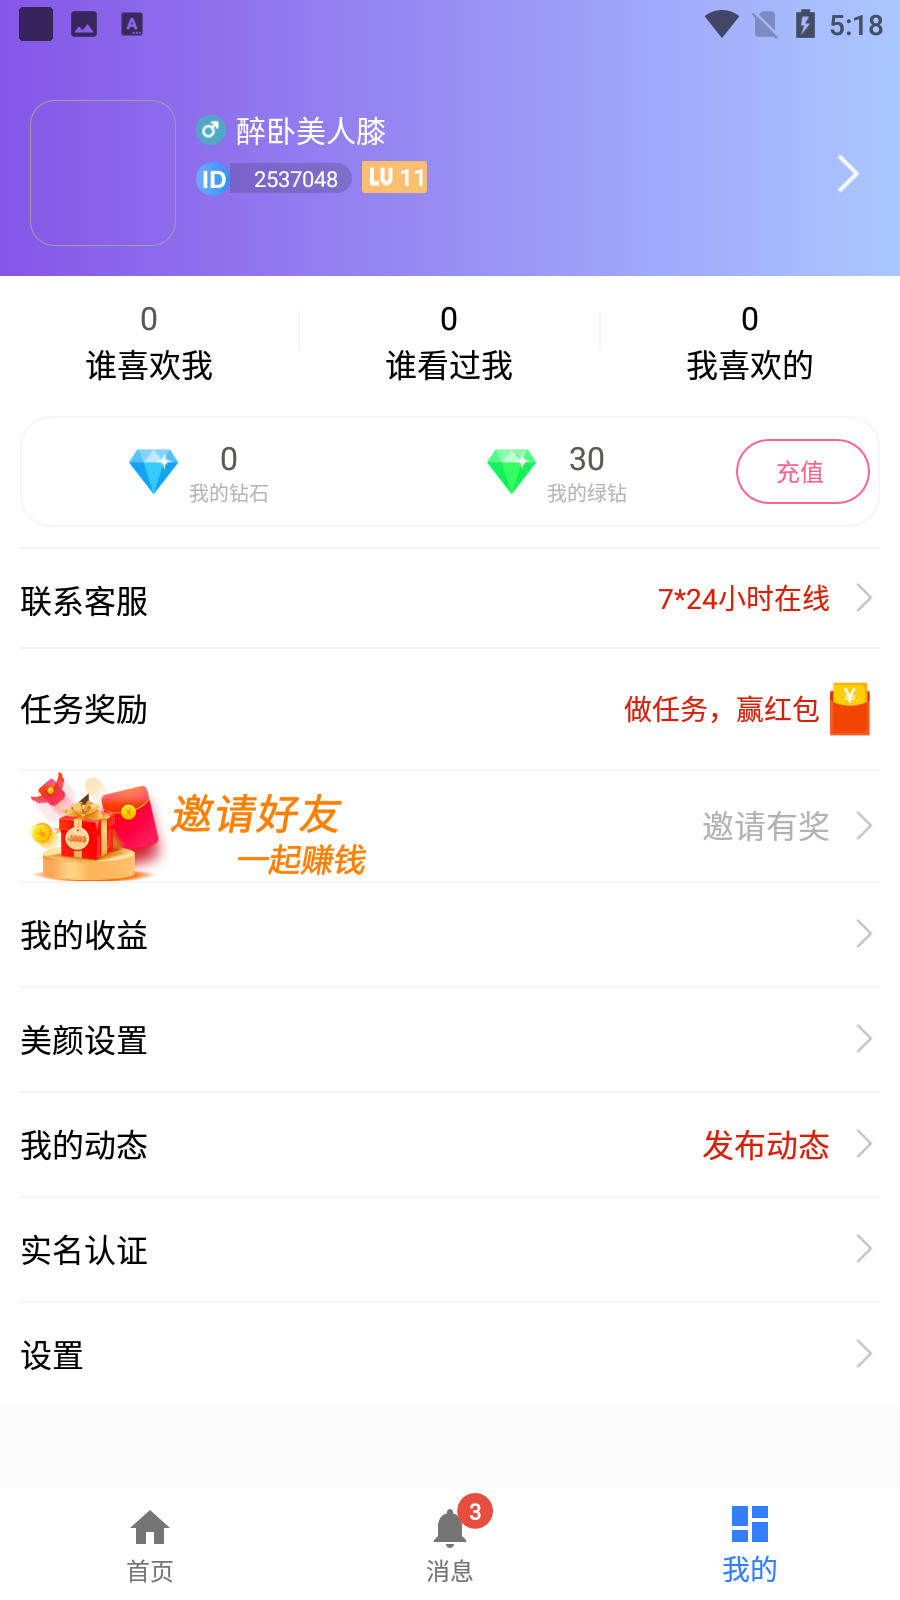 佳人有缘app 3.10.04_release 手机版3.12.04_release 手机版